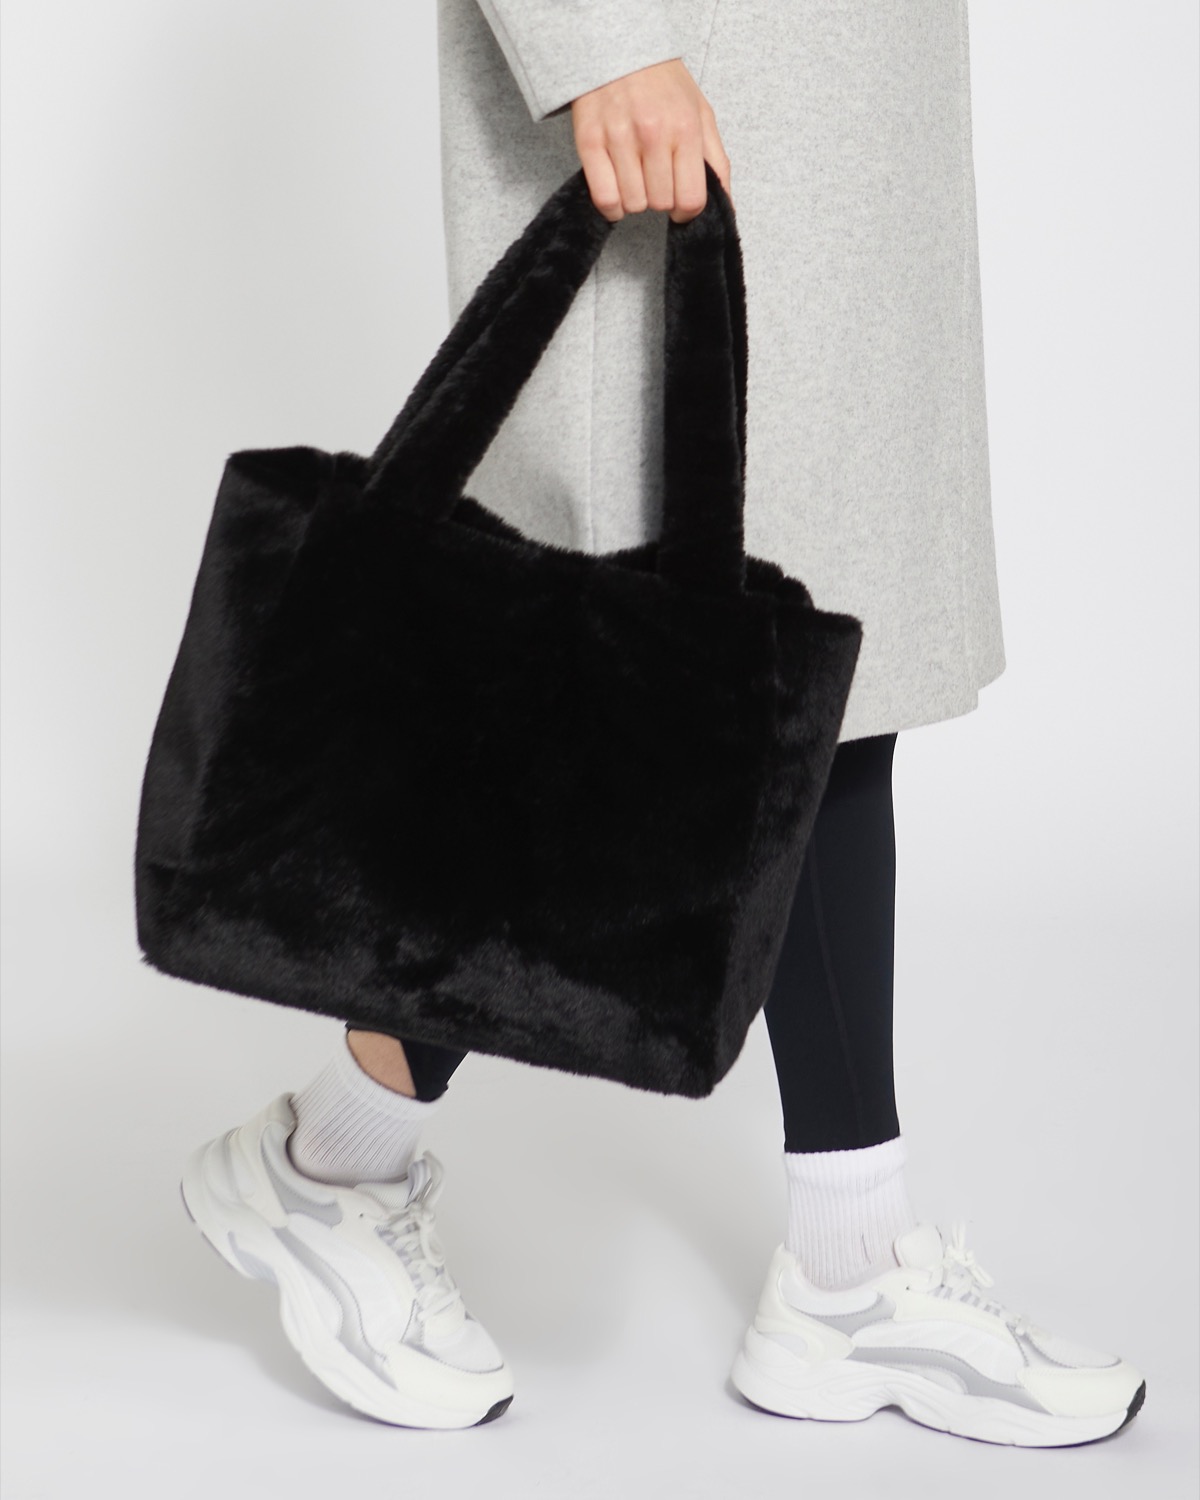 FOREVER 21 Faux Fur Tote Bags for Women | Mercari